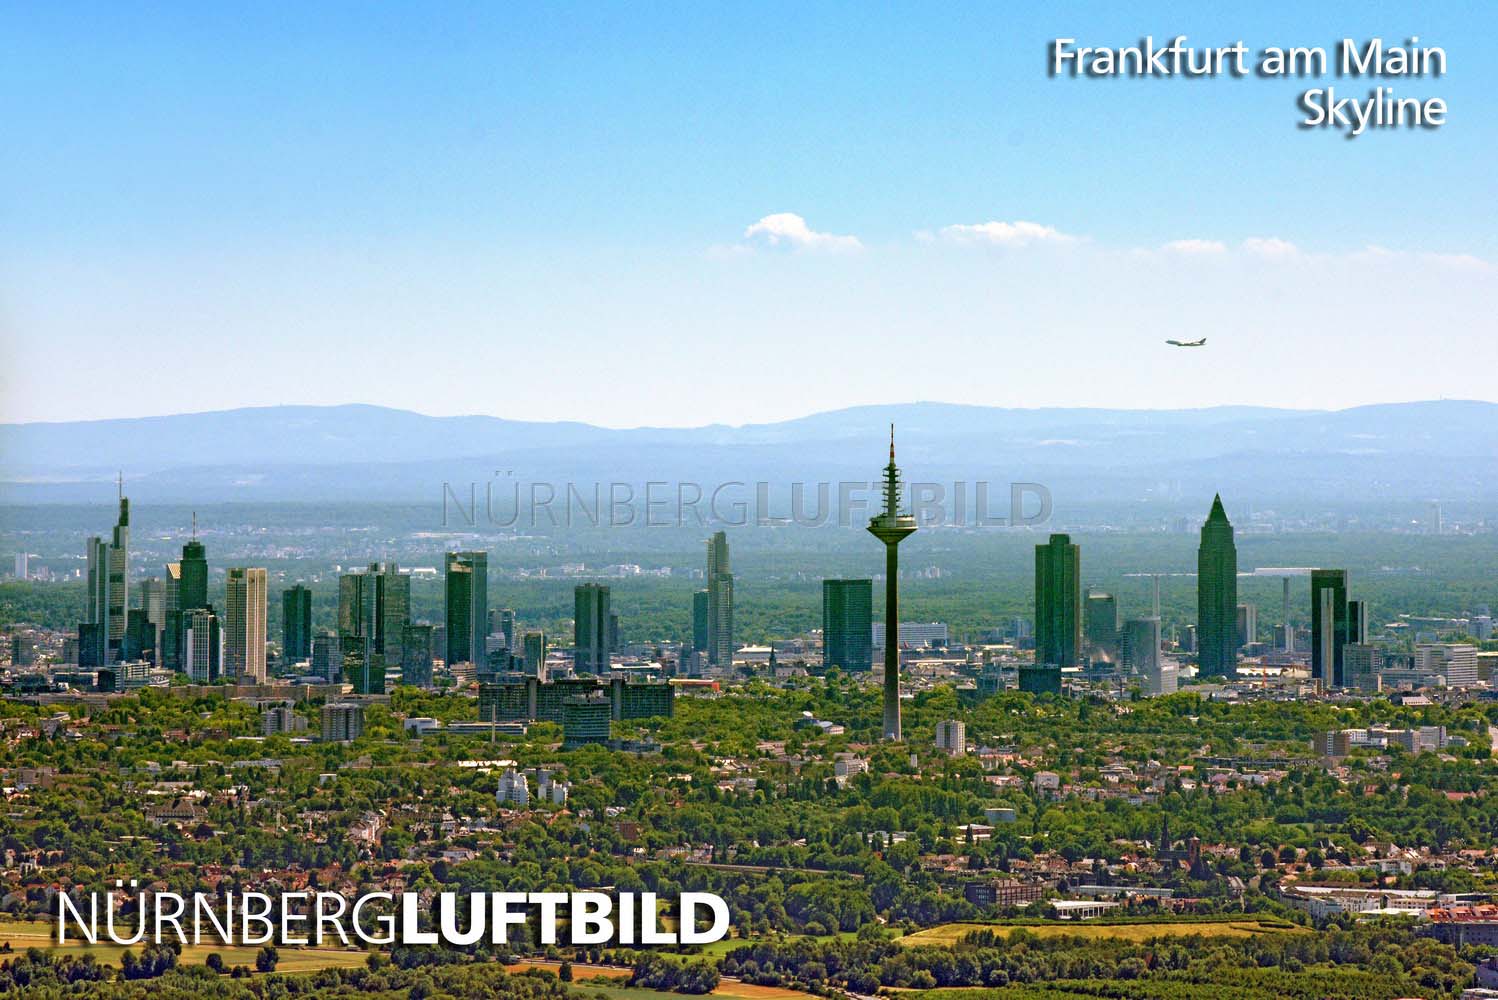 Skyline von Frankfurt am Main, Luftaufnahme